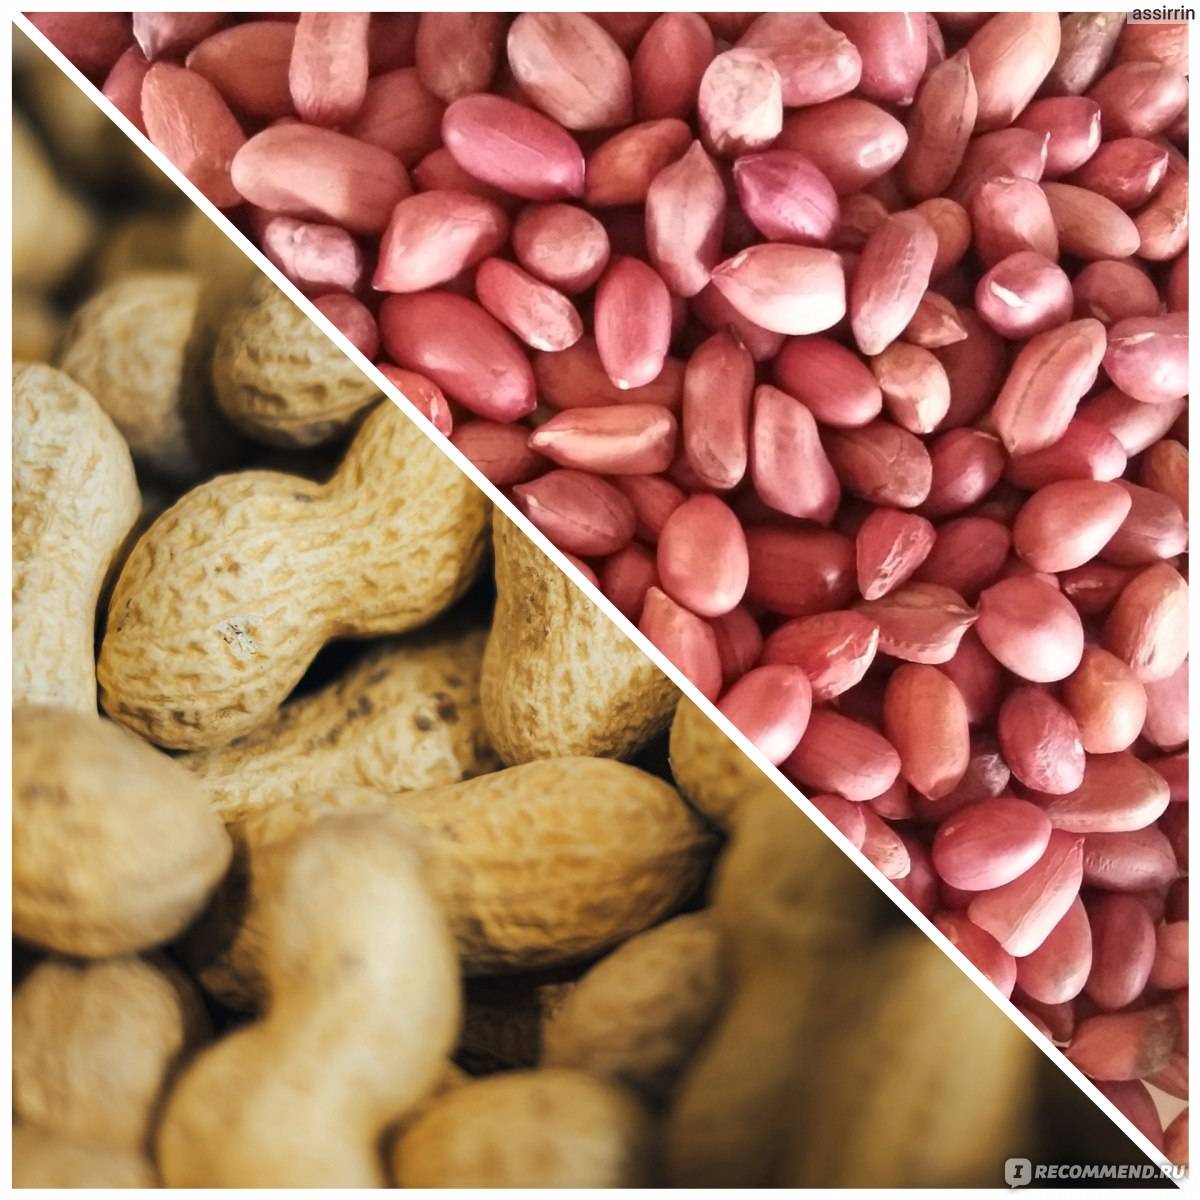 “арахис — польза и вред для нашего организма, калорийность и способы приготовления”